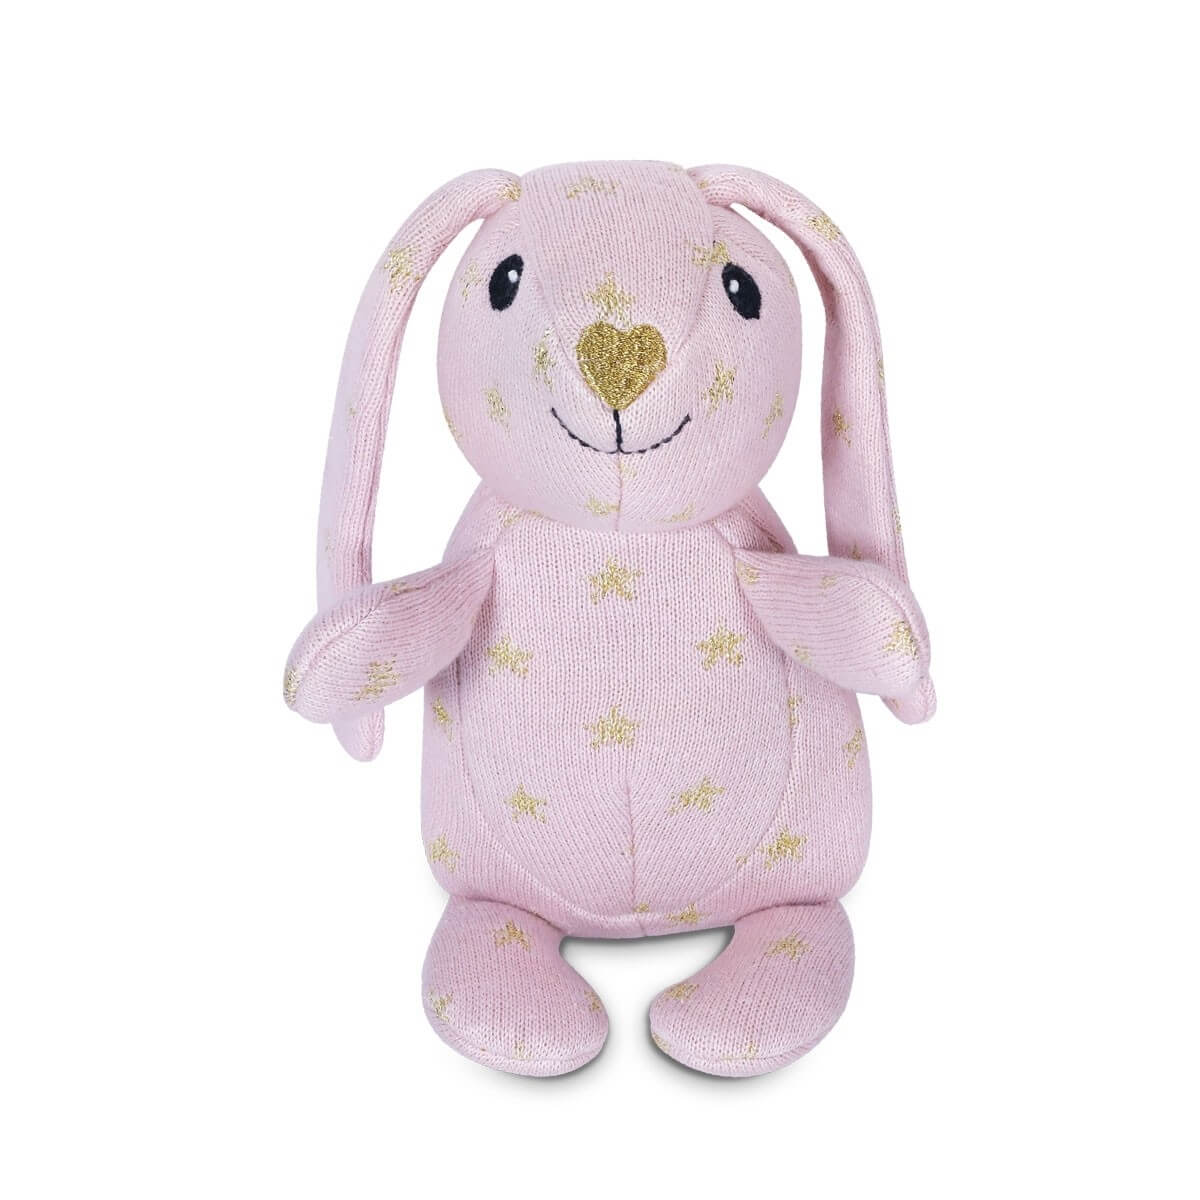 Sparkle Knit Patterned Bunny Plush Toy - Apple Park